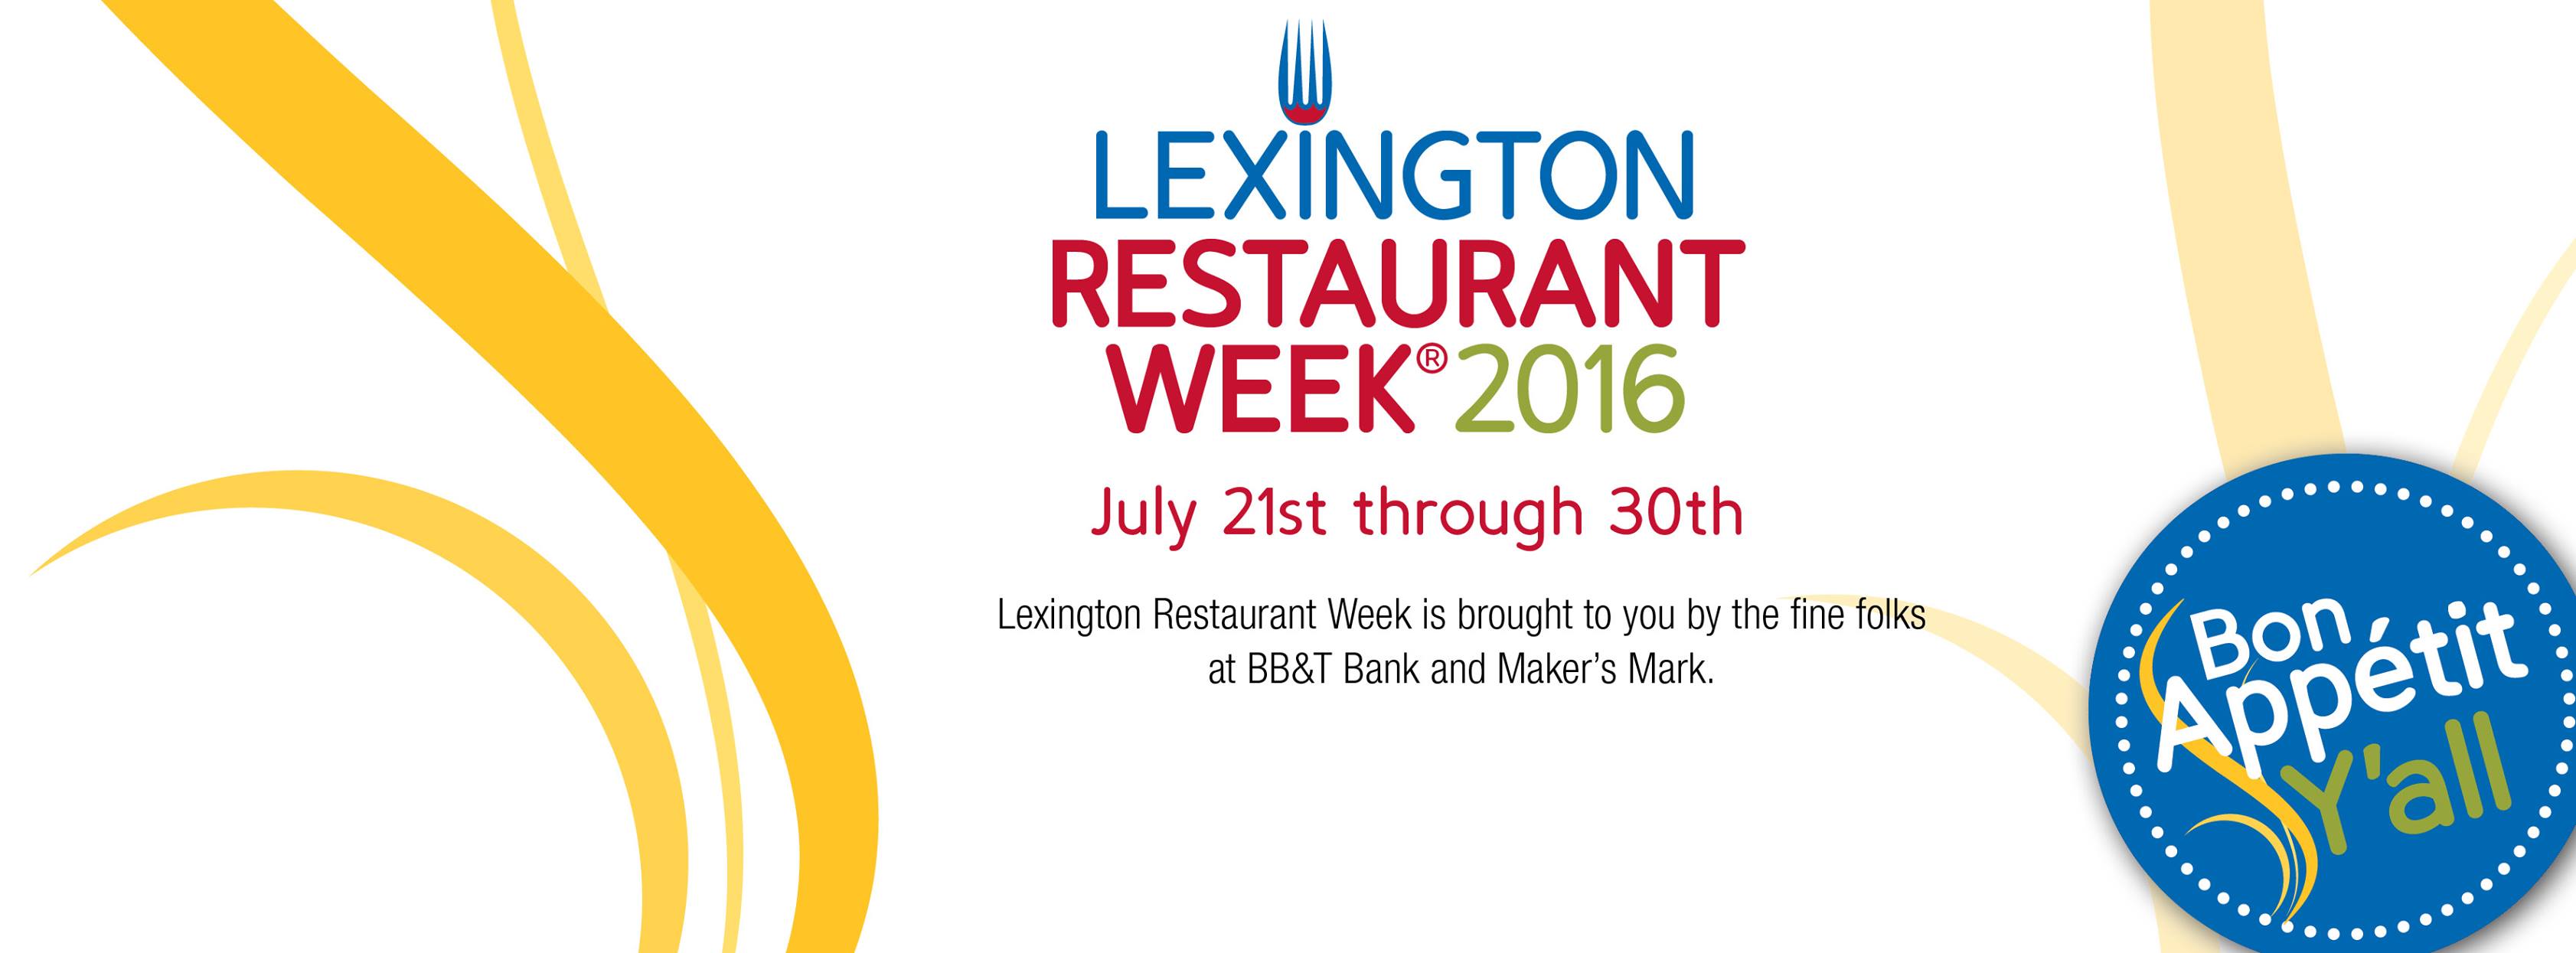 lexington restaurant week 2016